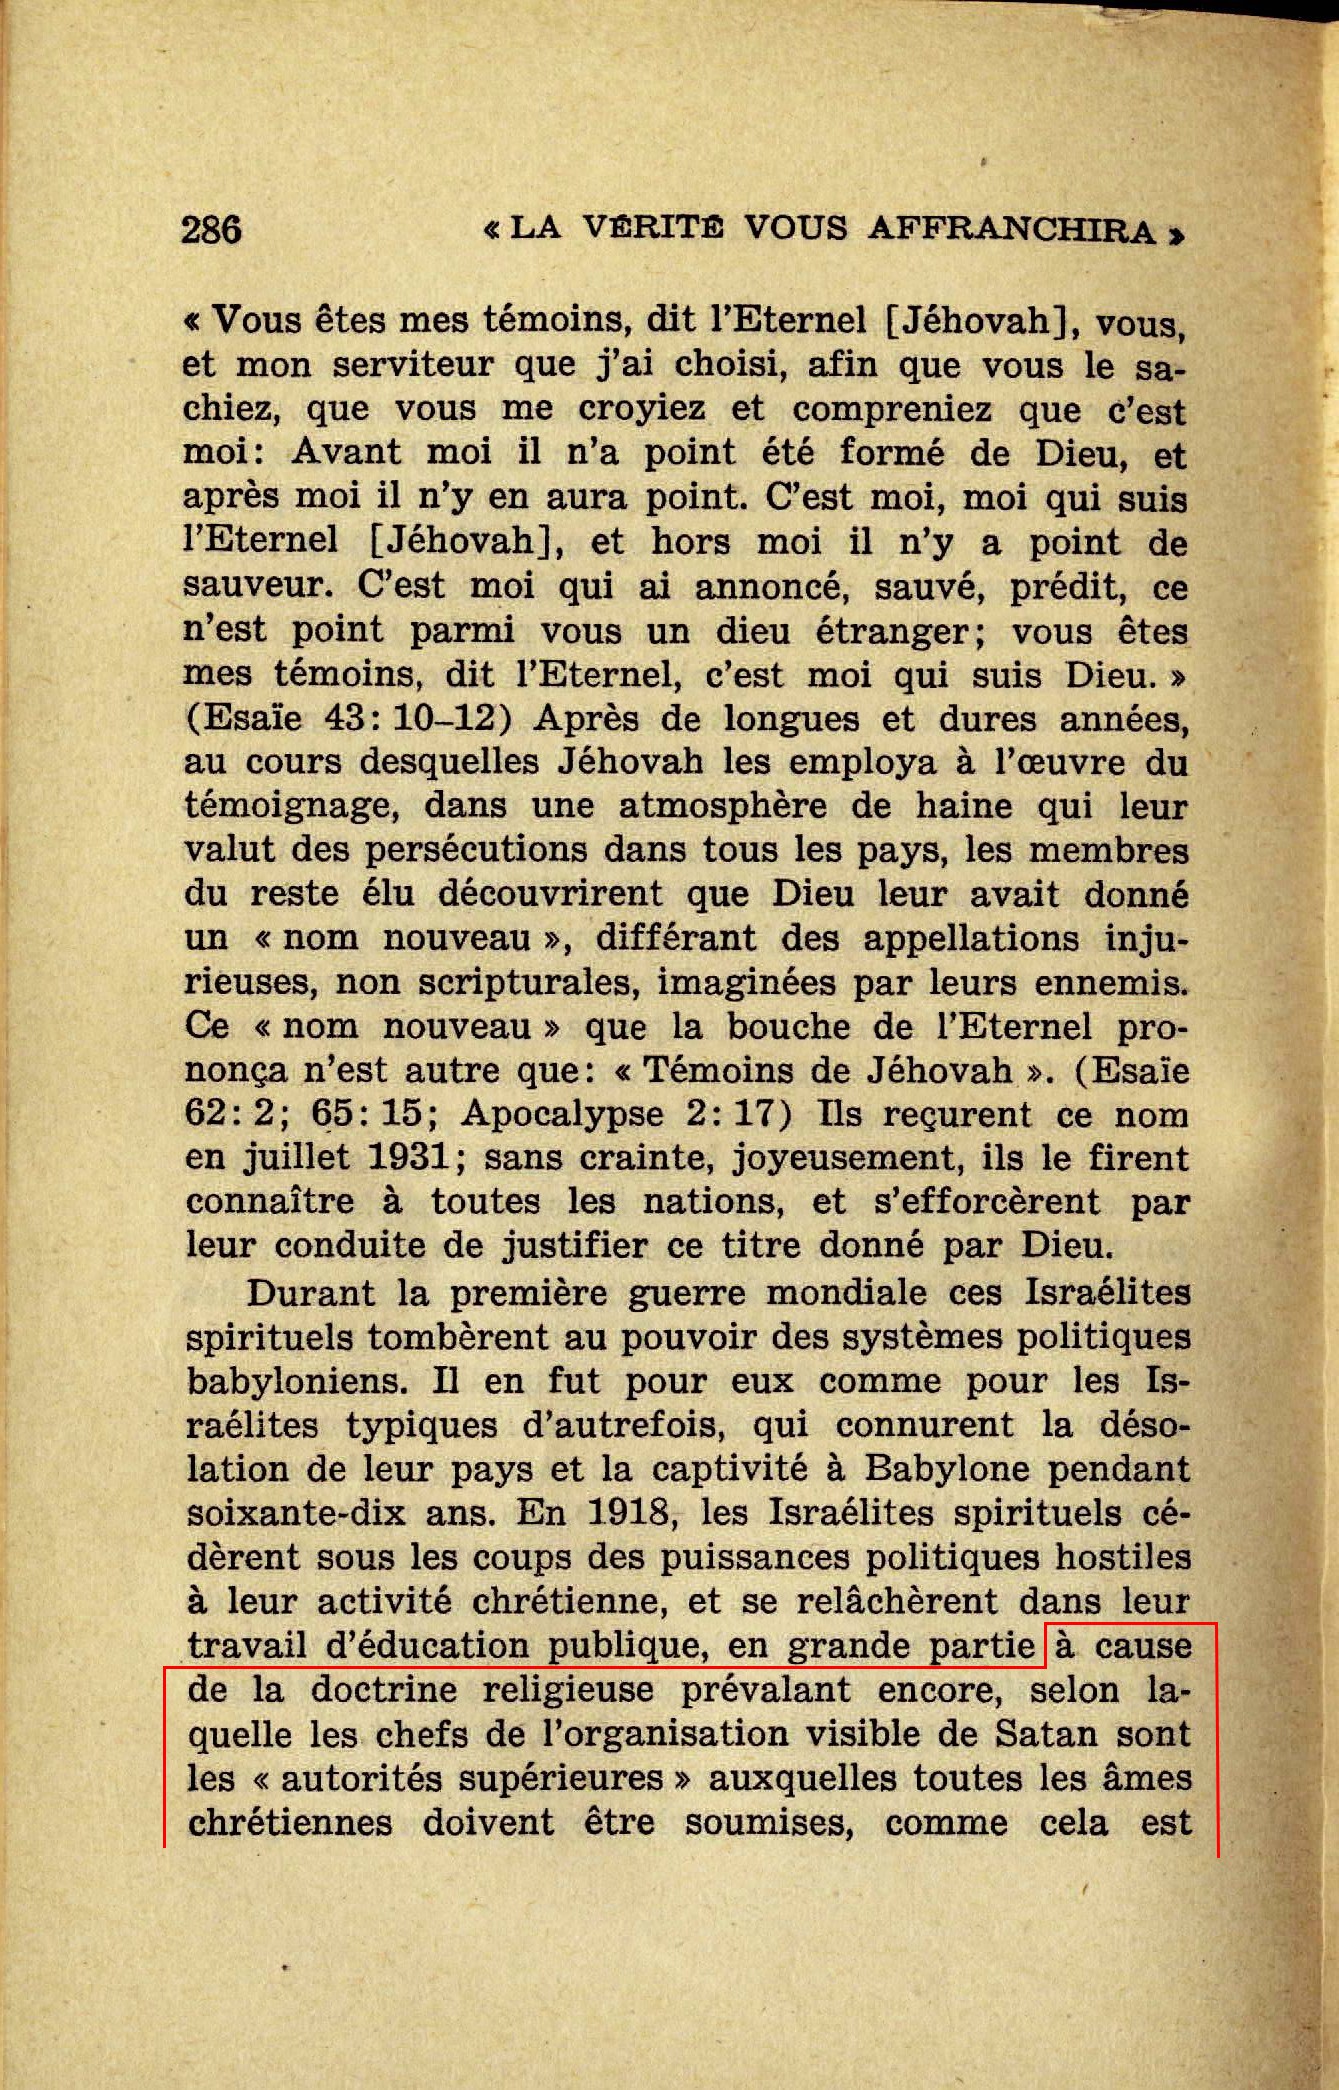 Enseignements non bibliques du collège central - Page 6 La-verite-vous-affranchira-1947-p286